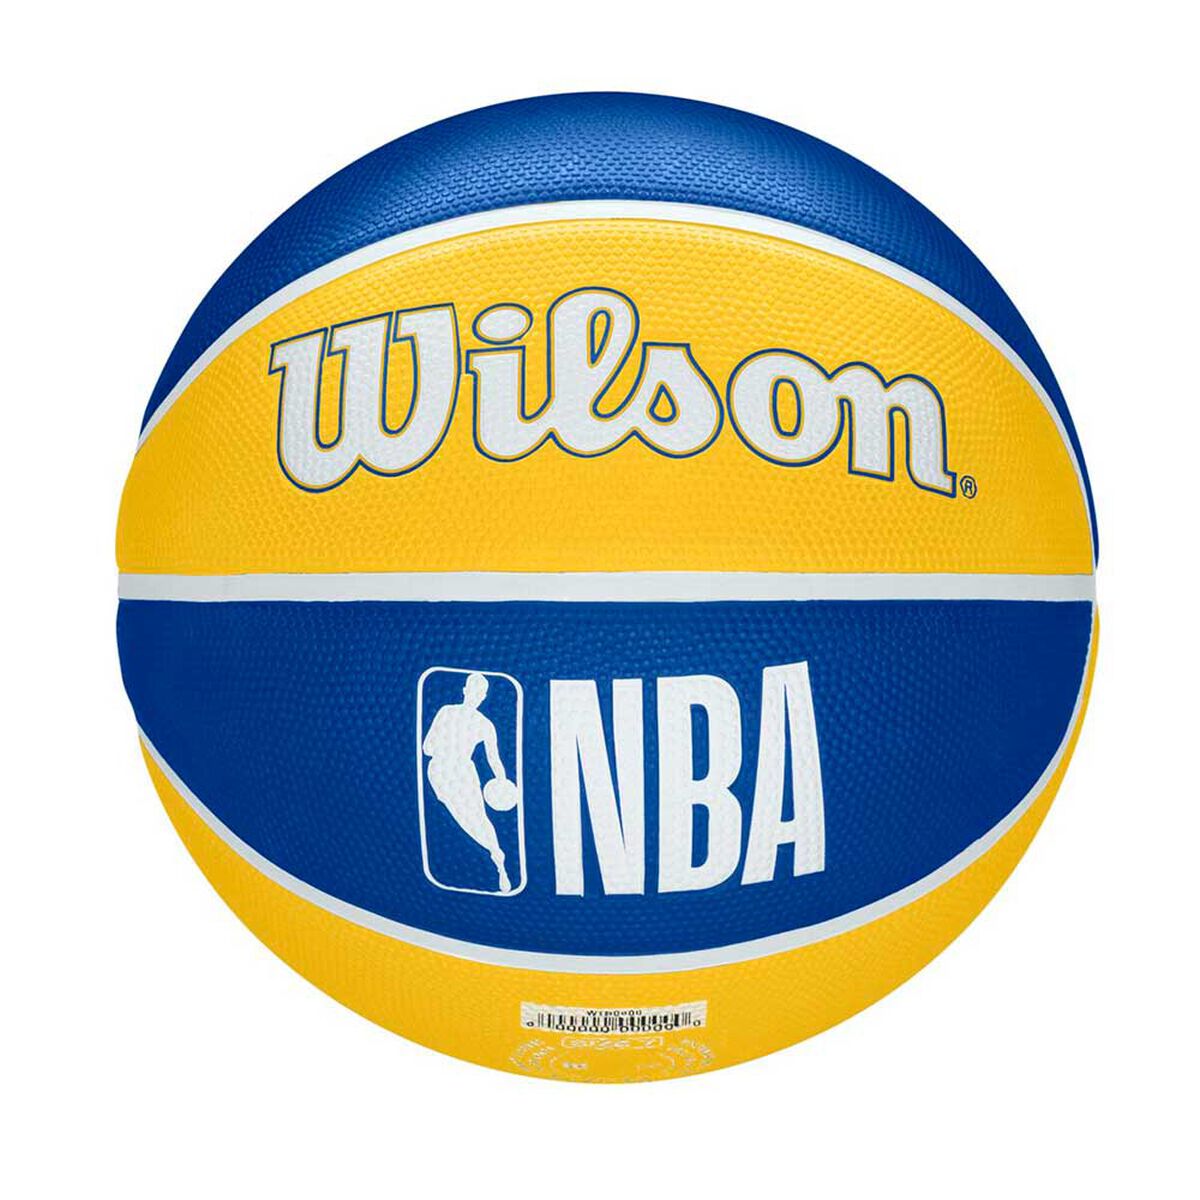 Balón de Básquetbol NBA Wilson Golden State Warriors